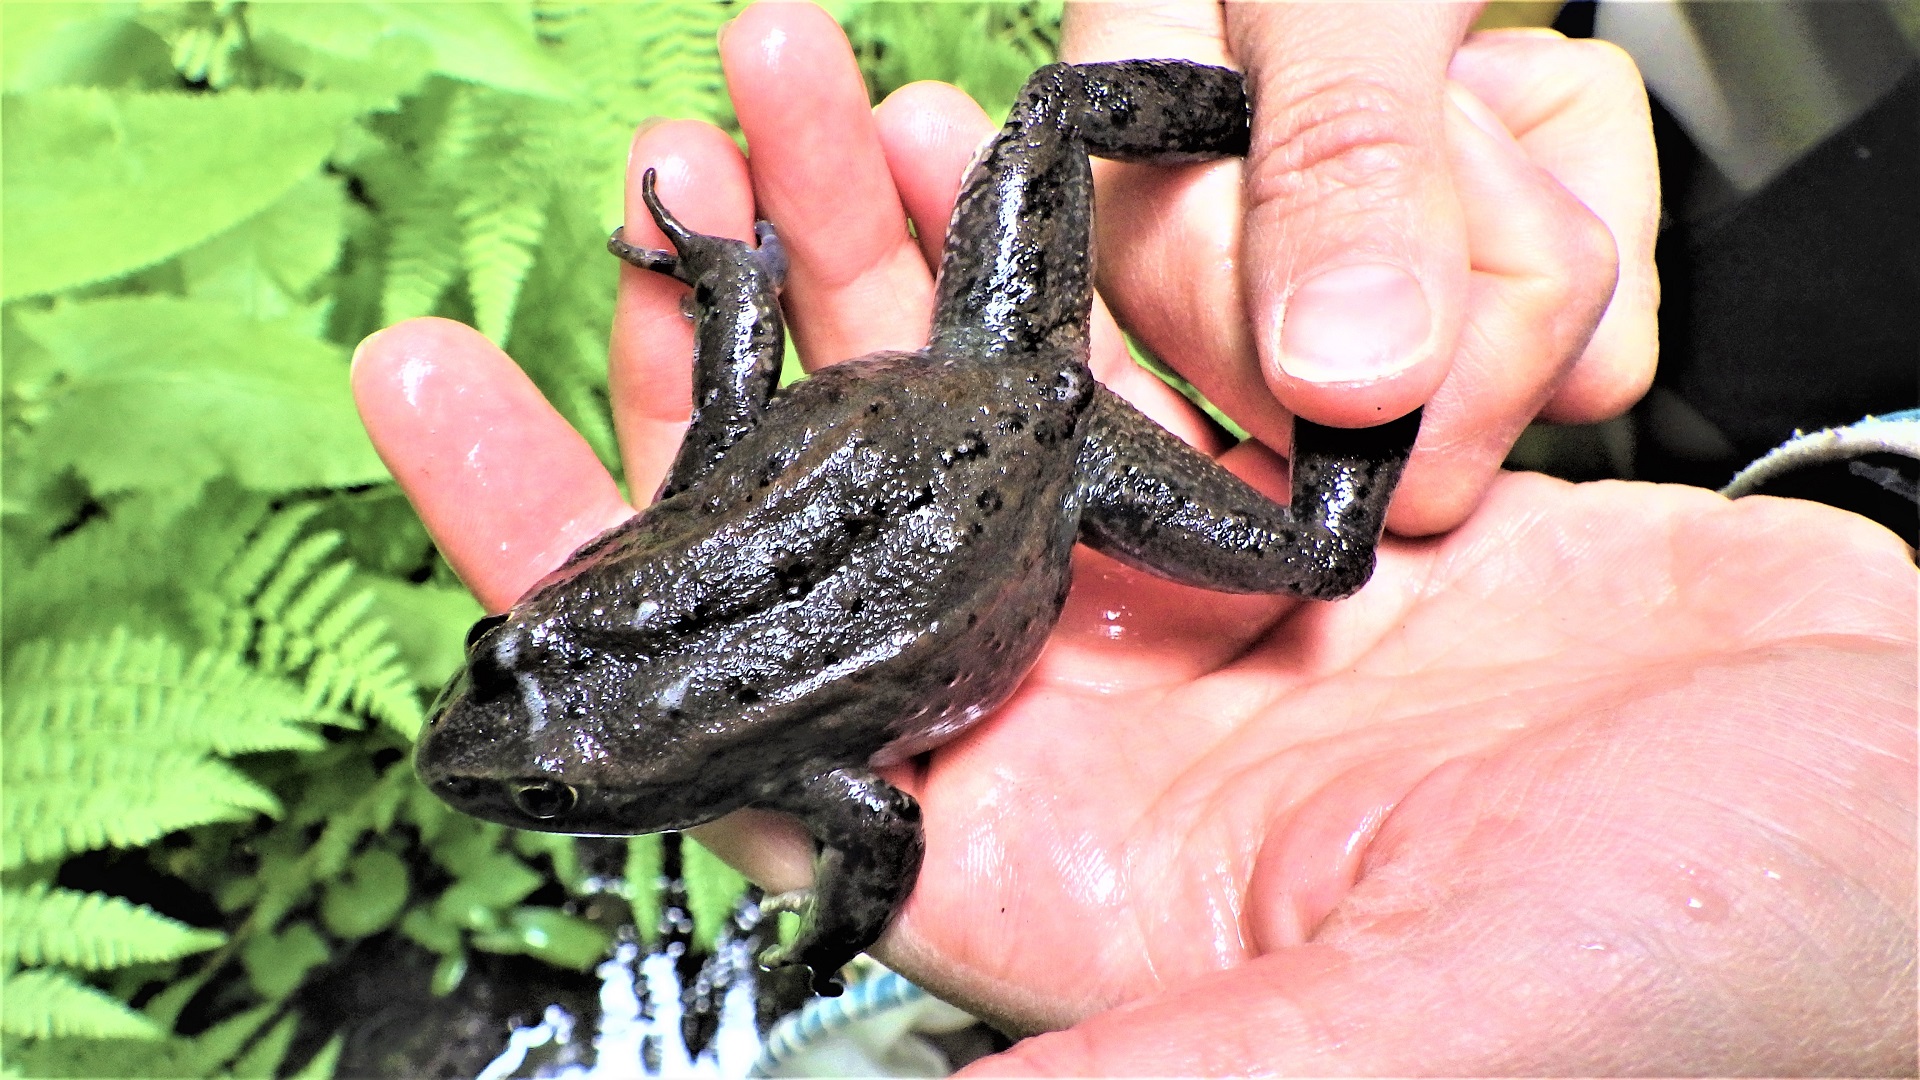 A frog in a crew member's hands